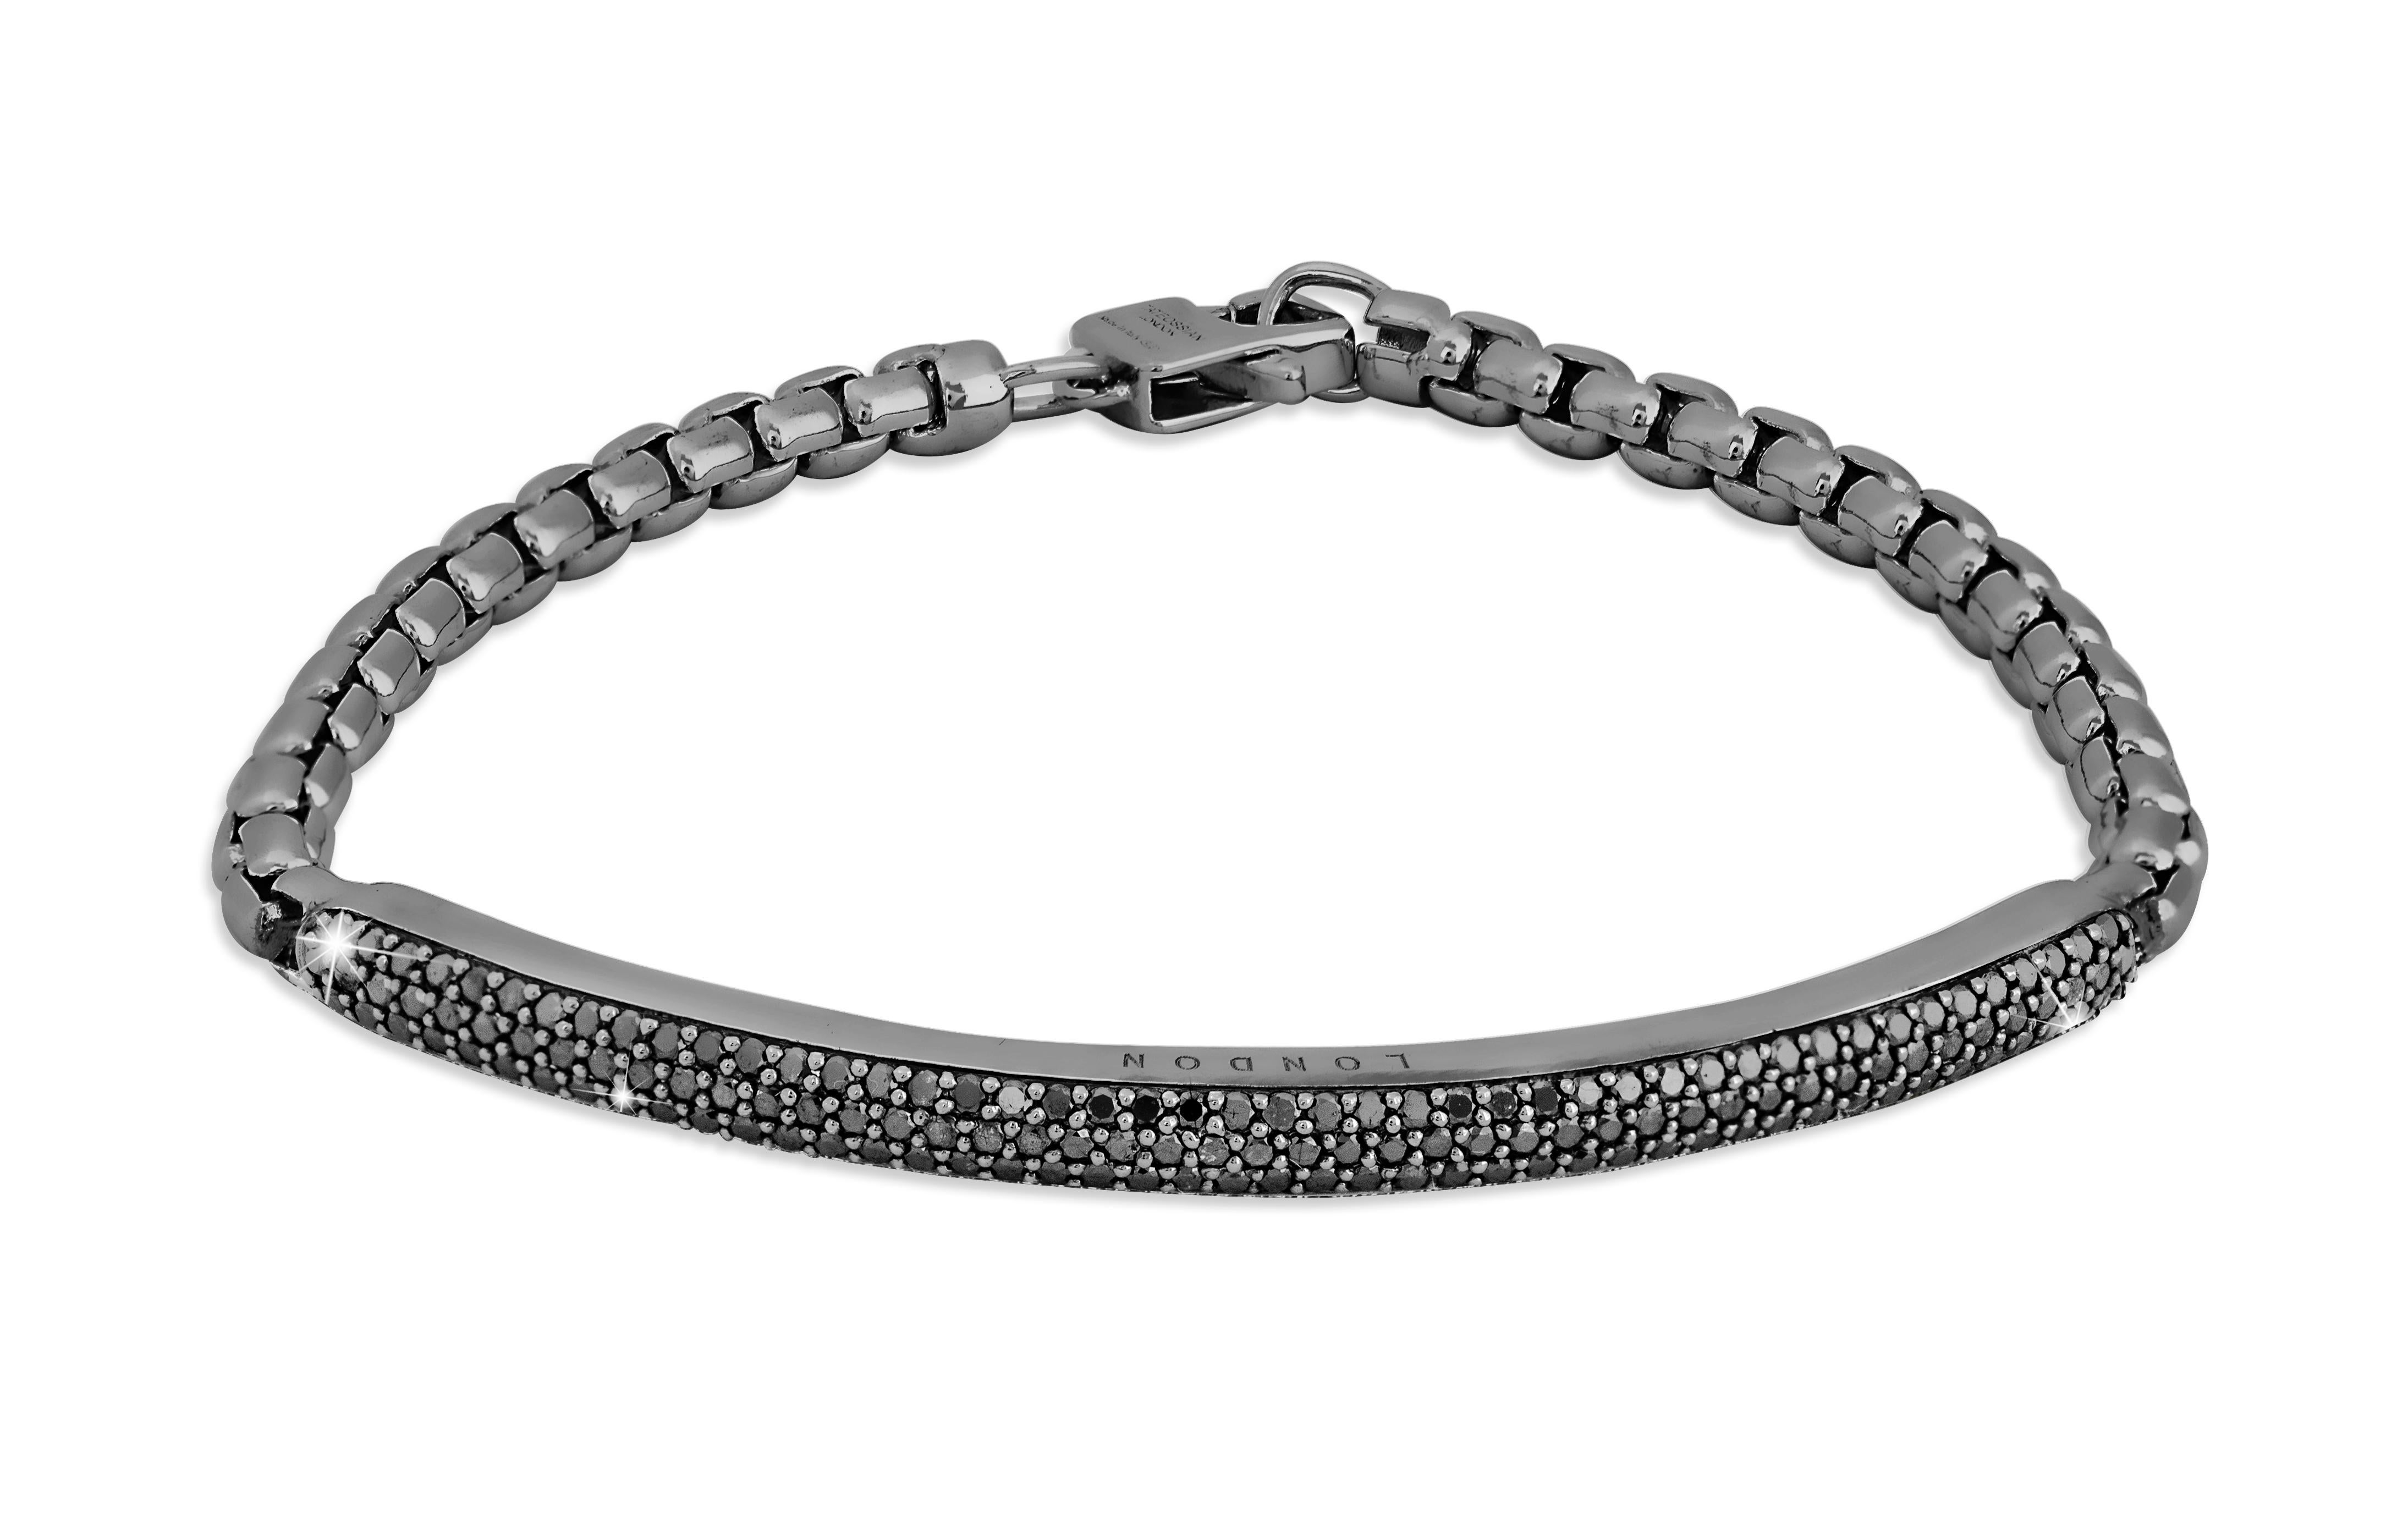 Grand bracelet Windsor en argent sterling plaqué rhodium noir avec diamants noirs

Ce bracelet comporte une barrette d'identification en argent sterling sertie d'une surface pavée de 139 diamants noirs. Toutes les pierres précieuses sont